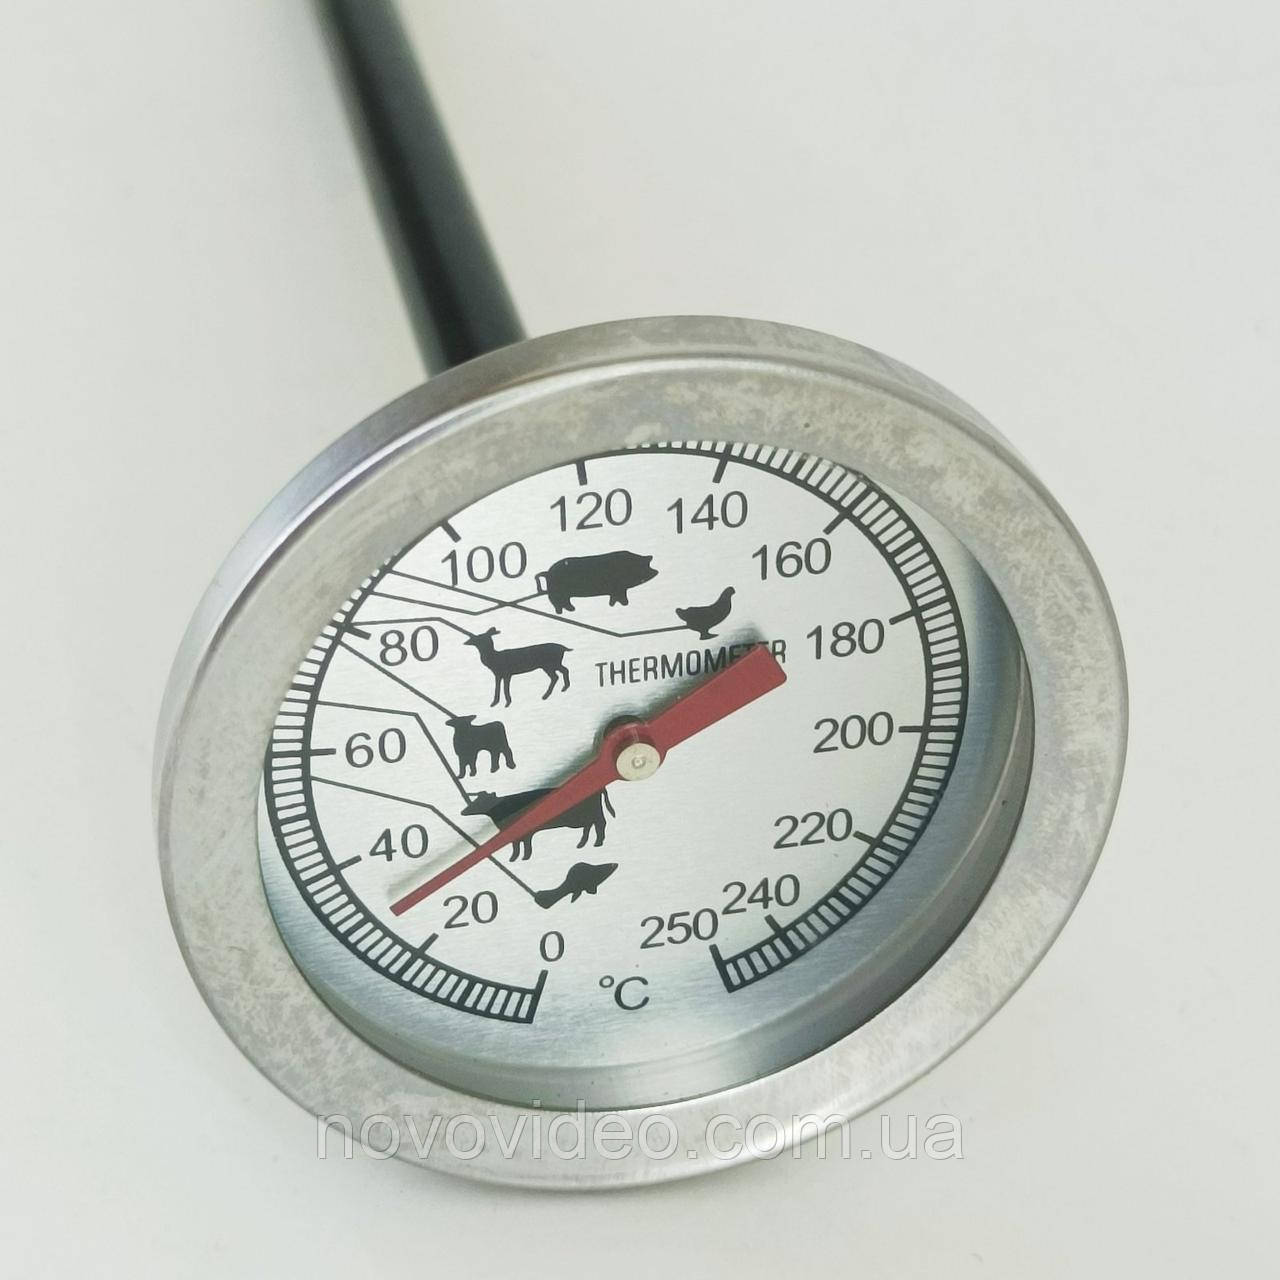 Кухонний термометр для м'яса зі щупом, кулінарний термометр для приготування їжі механічний (від 0 до 250 °C)